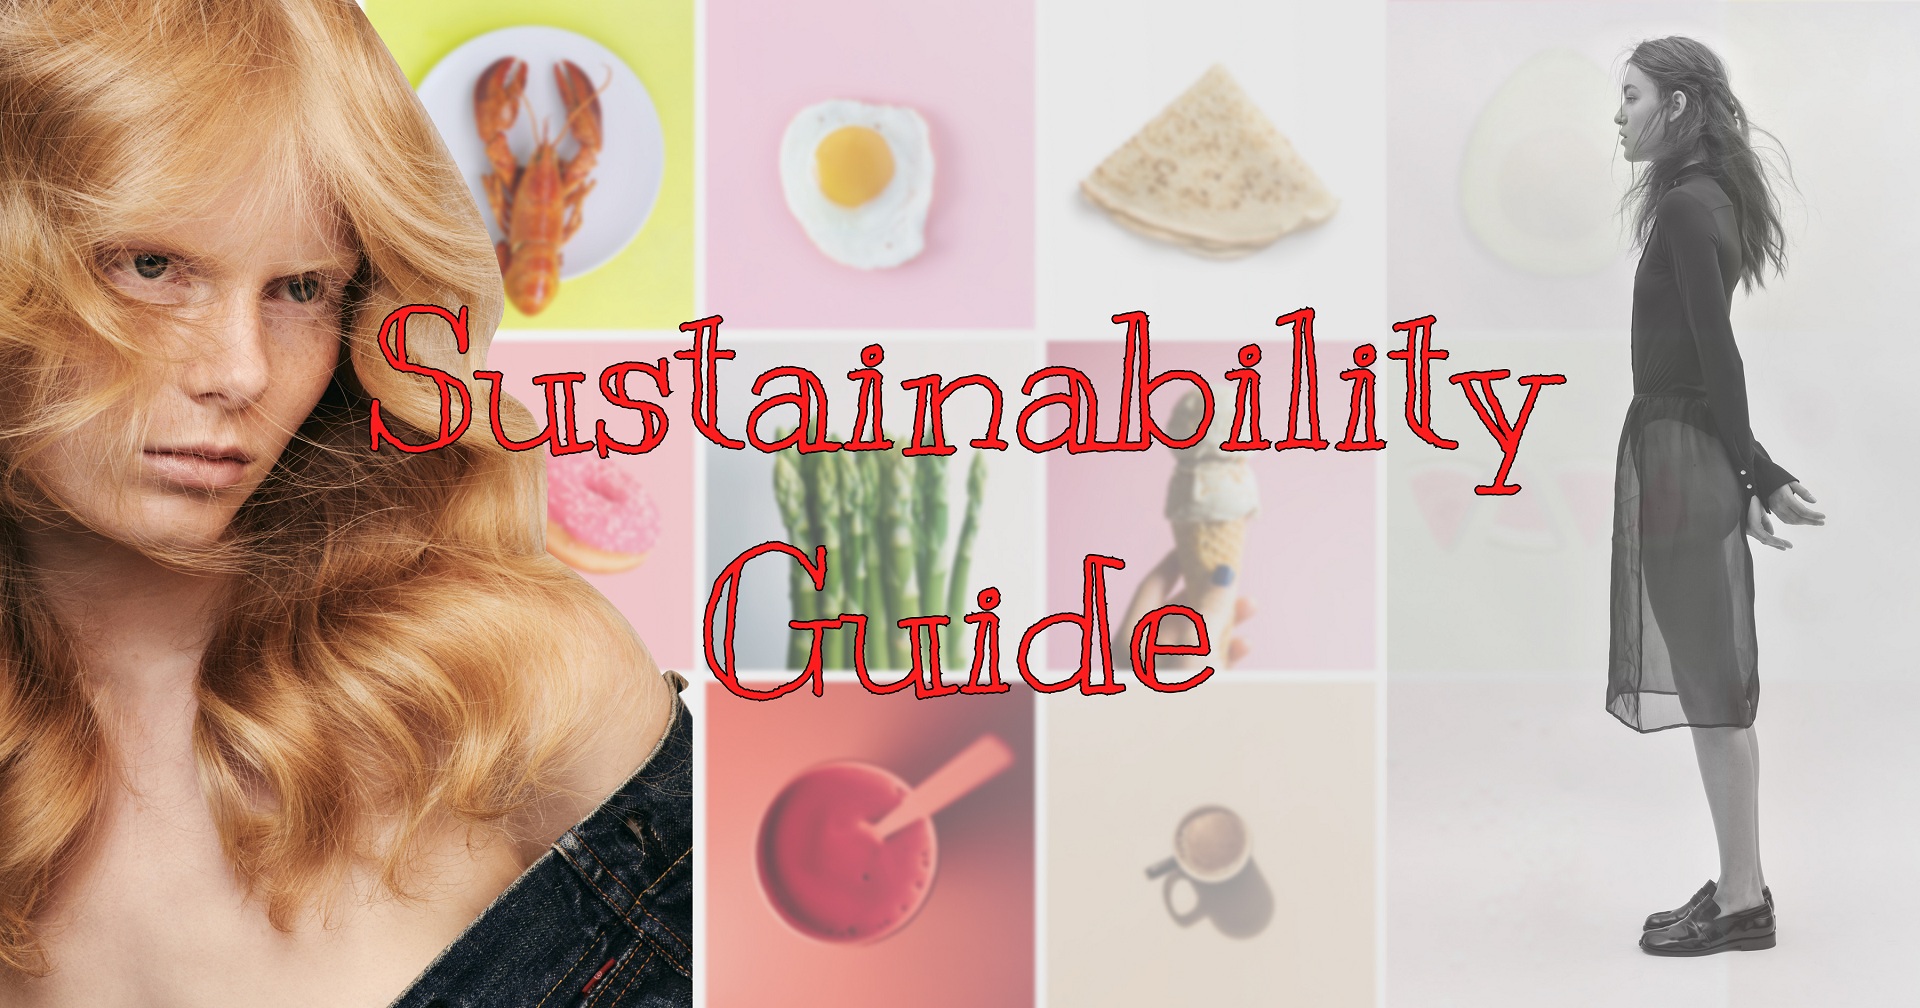 Sustainability Guide: 10 правил как питаться осознанно и чувствовать себя хорошо-Фото 1